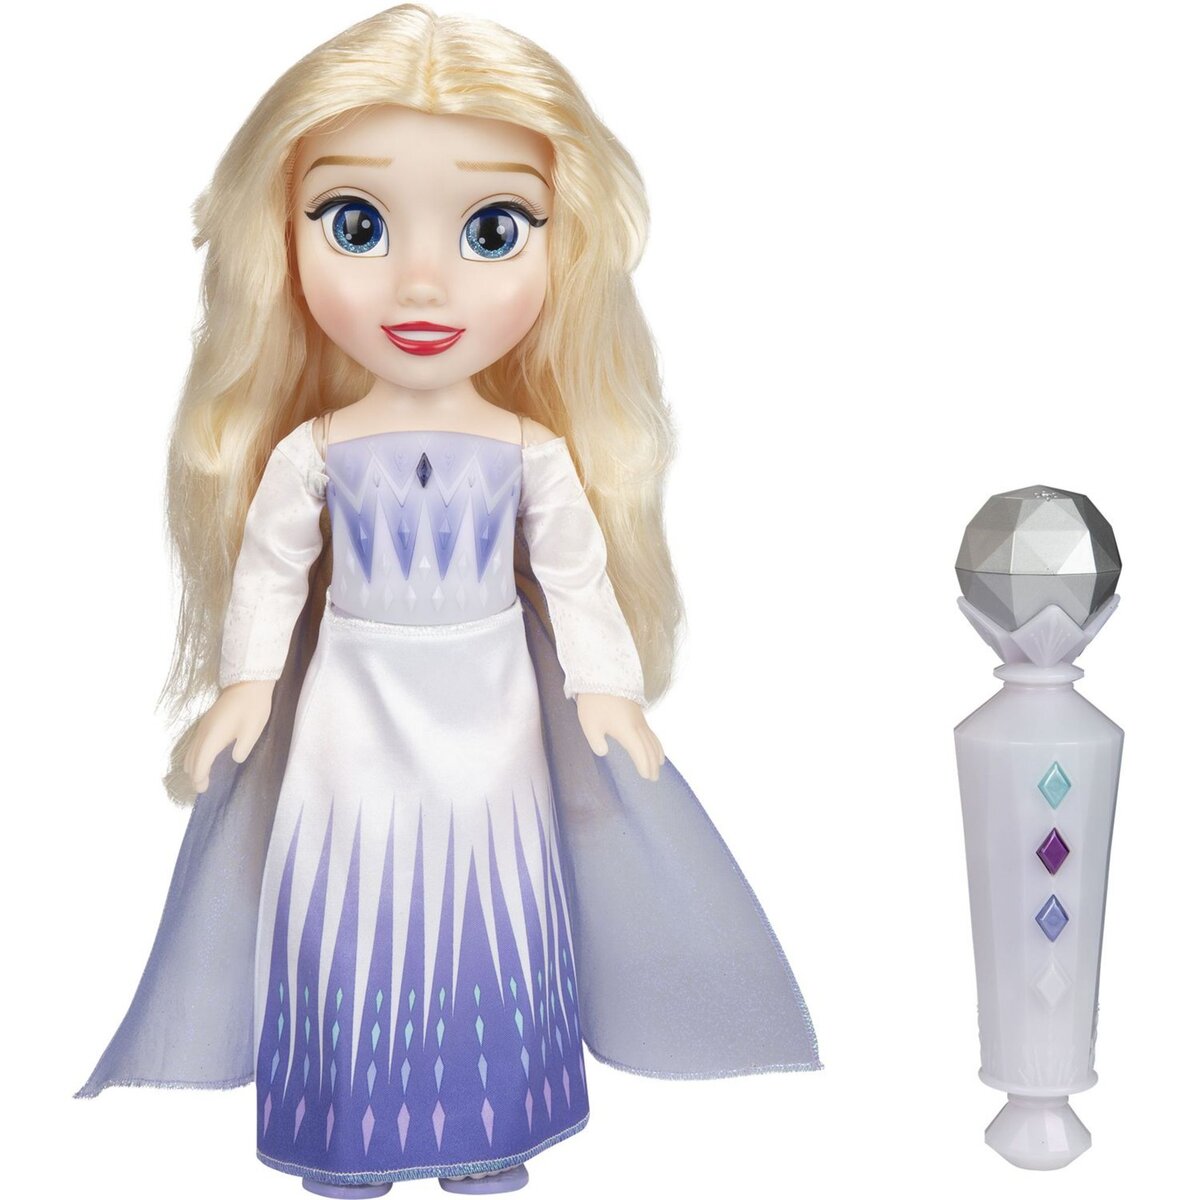 Poupée Elsa chantante frozen 2